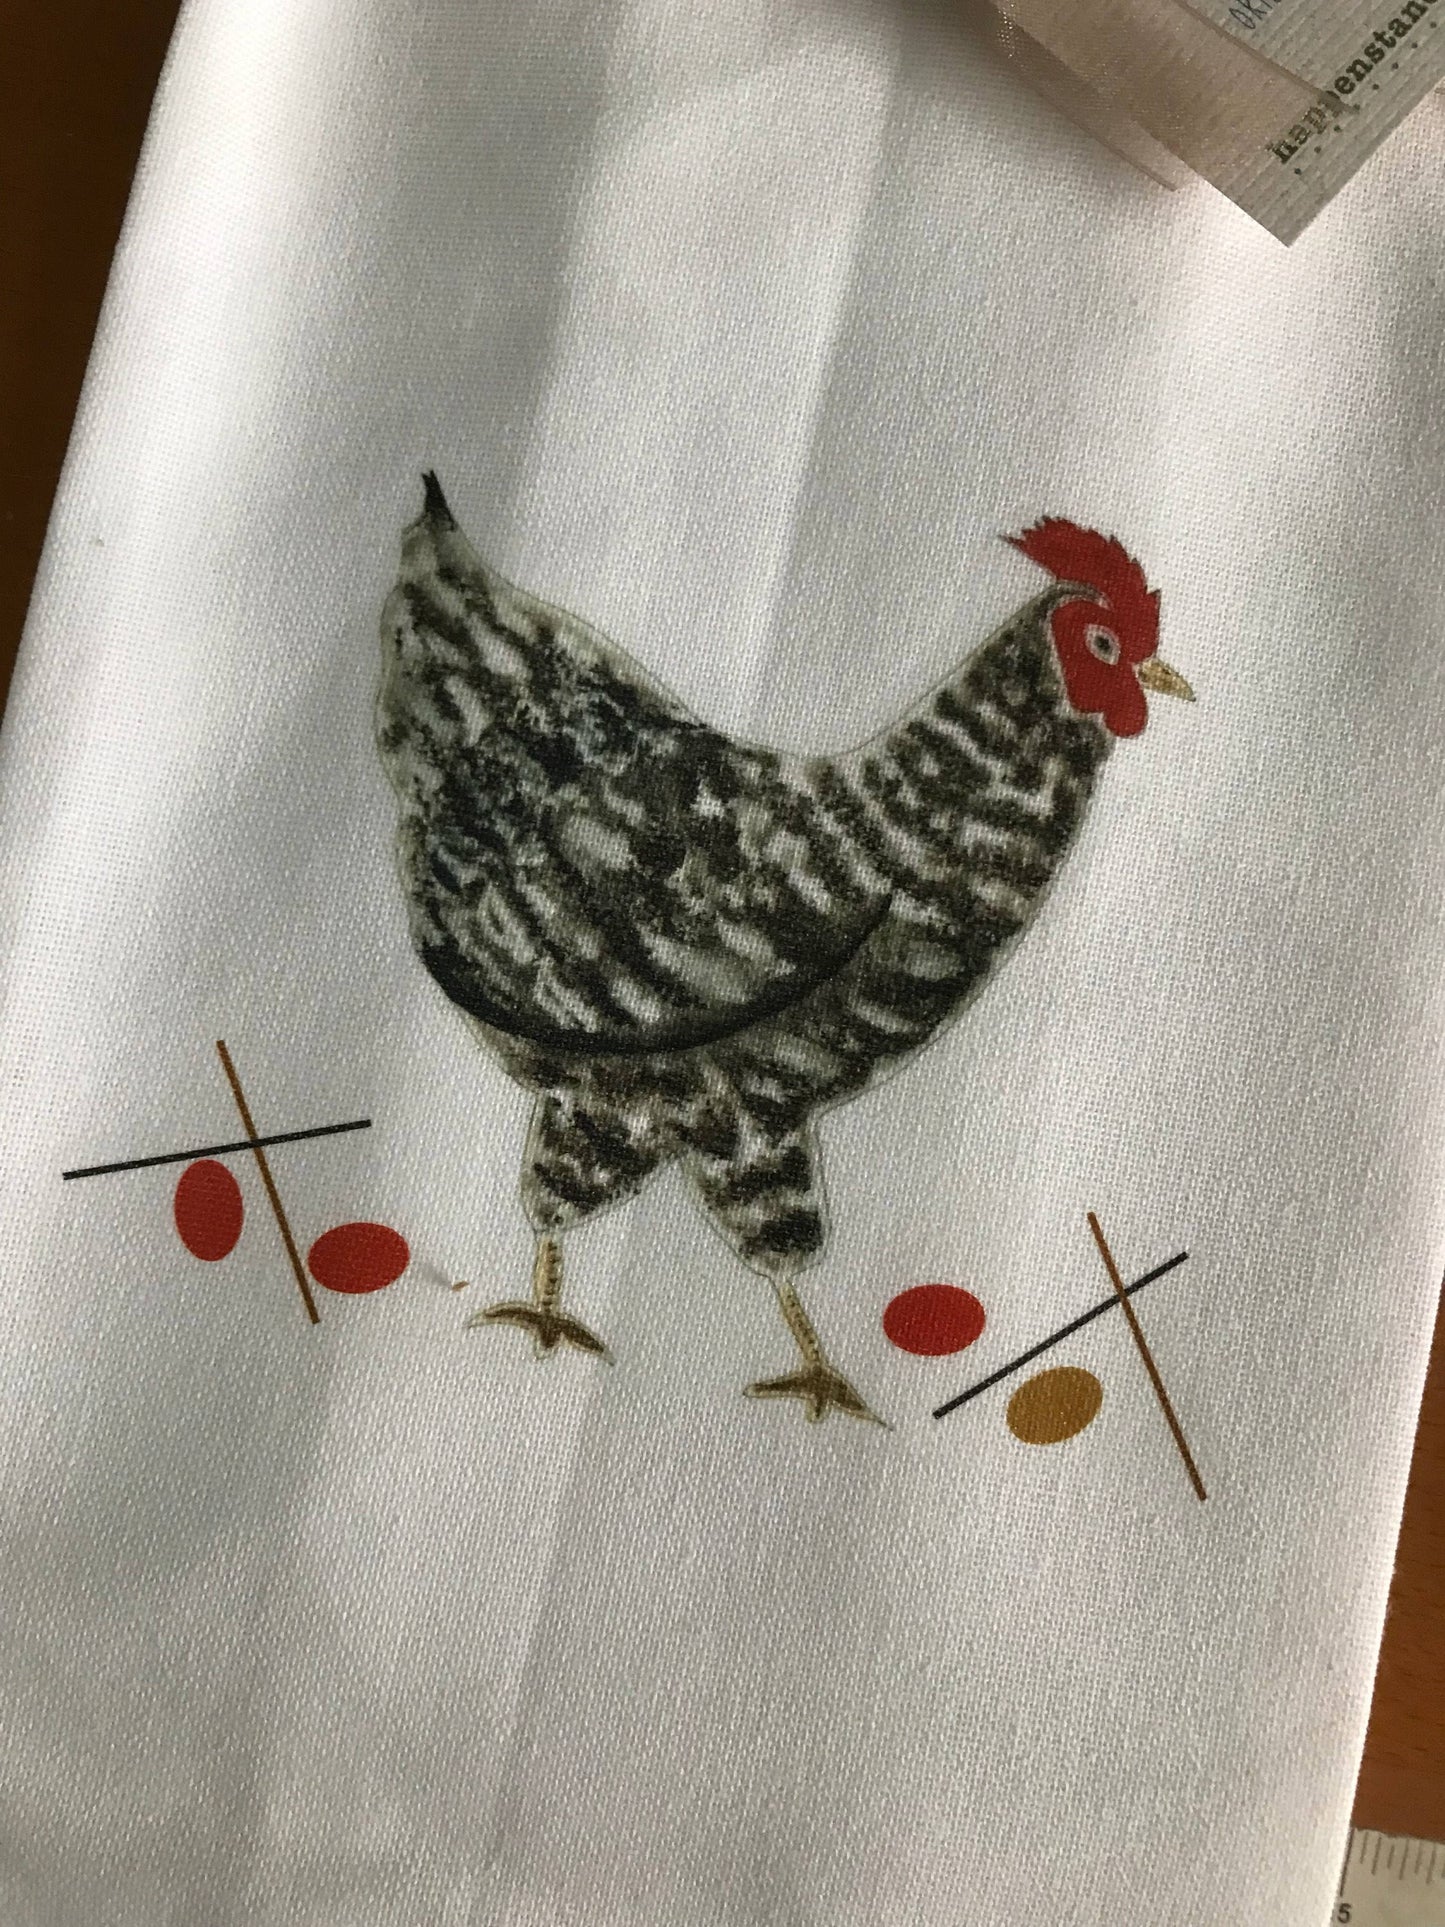 Speckled Hen Kitchen Towel.